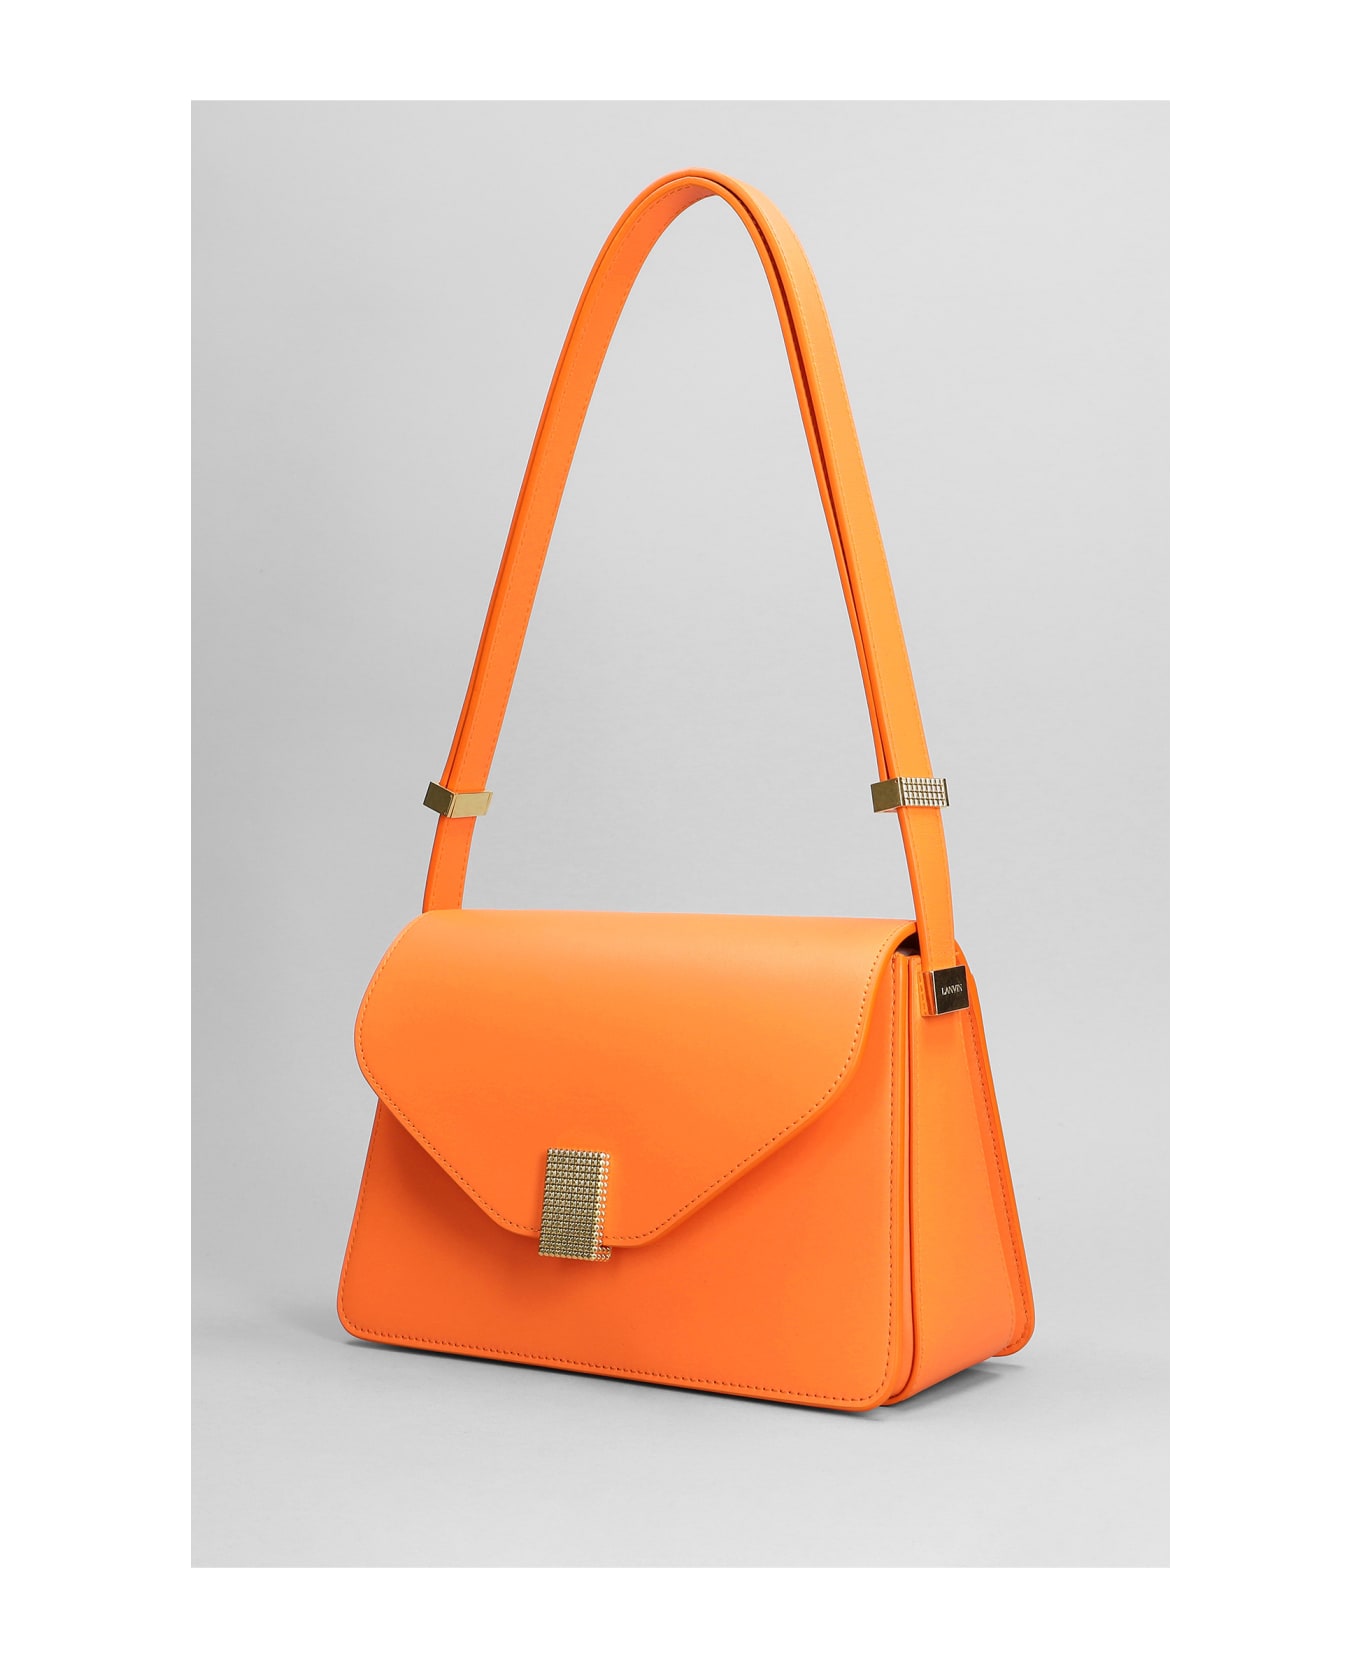 Lanvin Concerto Bag Shoulder Bag In Orange Leather - BRIGHT ORANGE